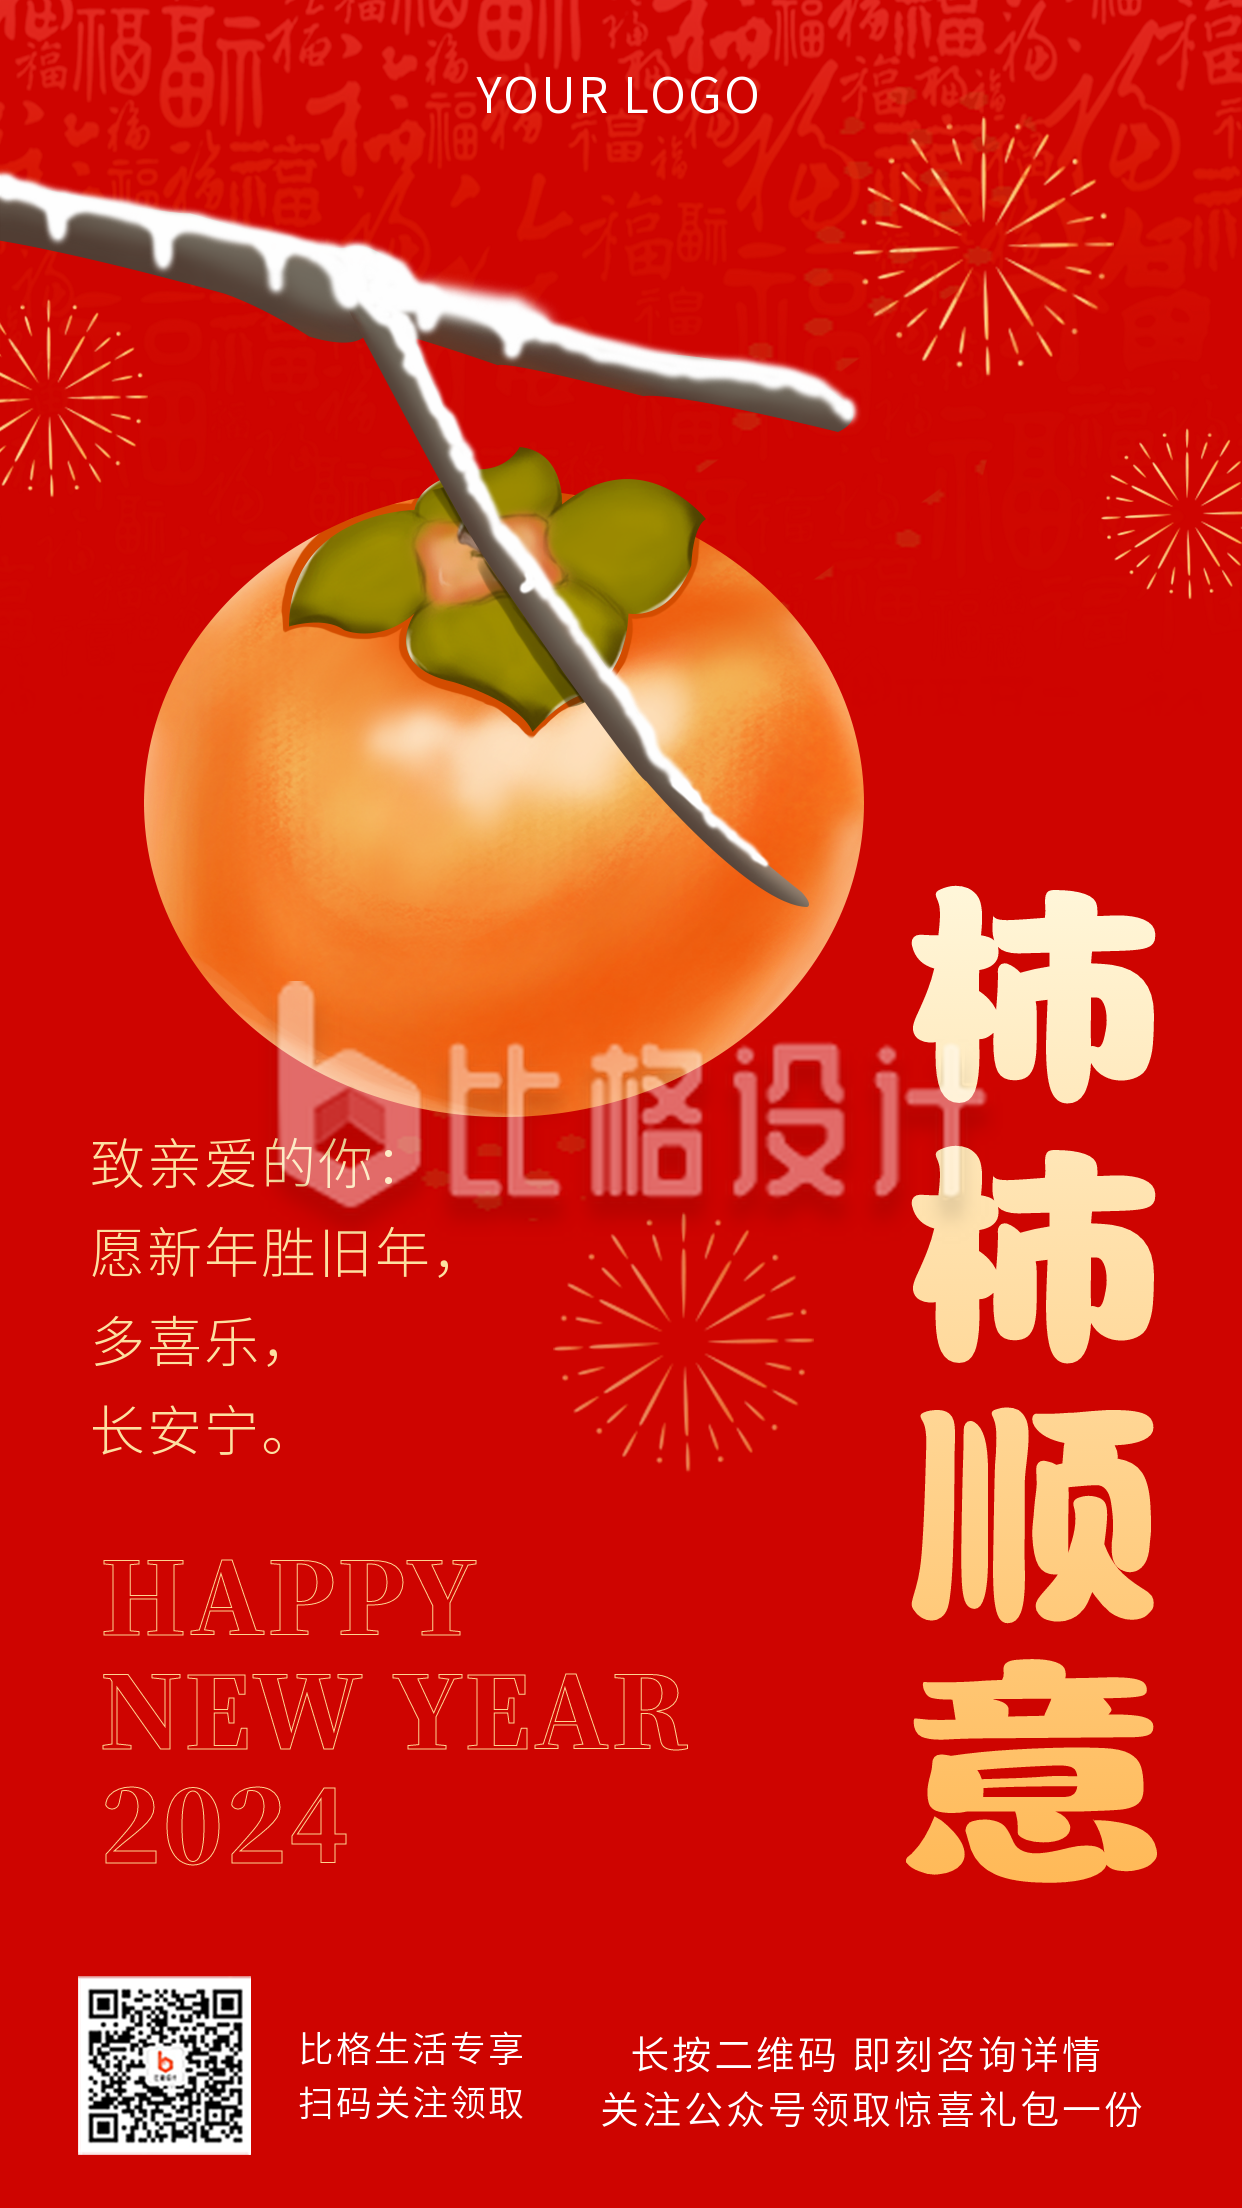 春节祝福文案趣味物流热词宣传推广手机海报